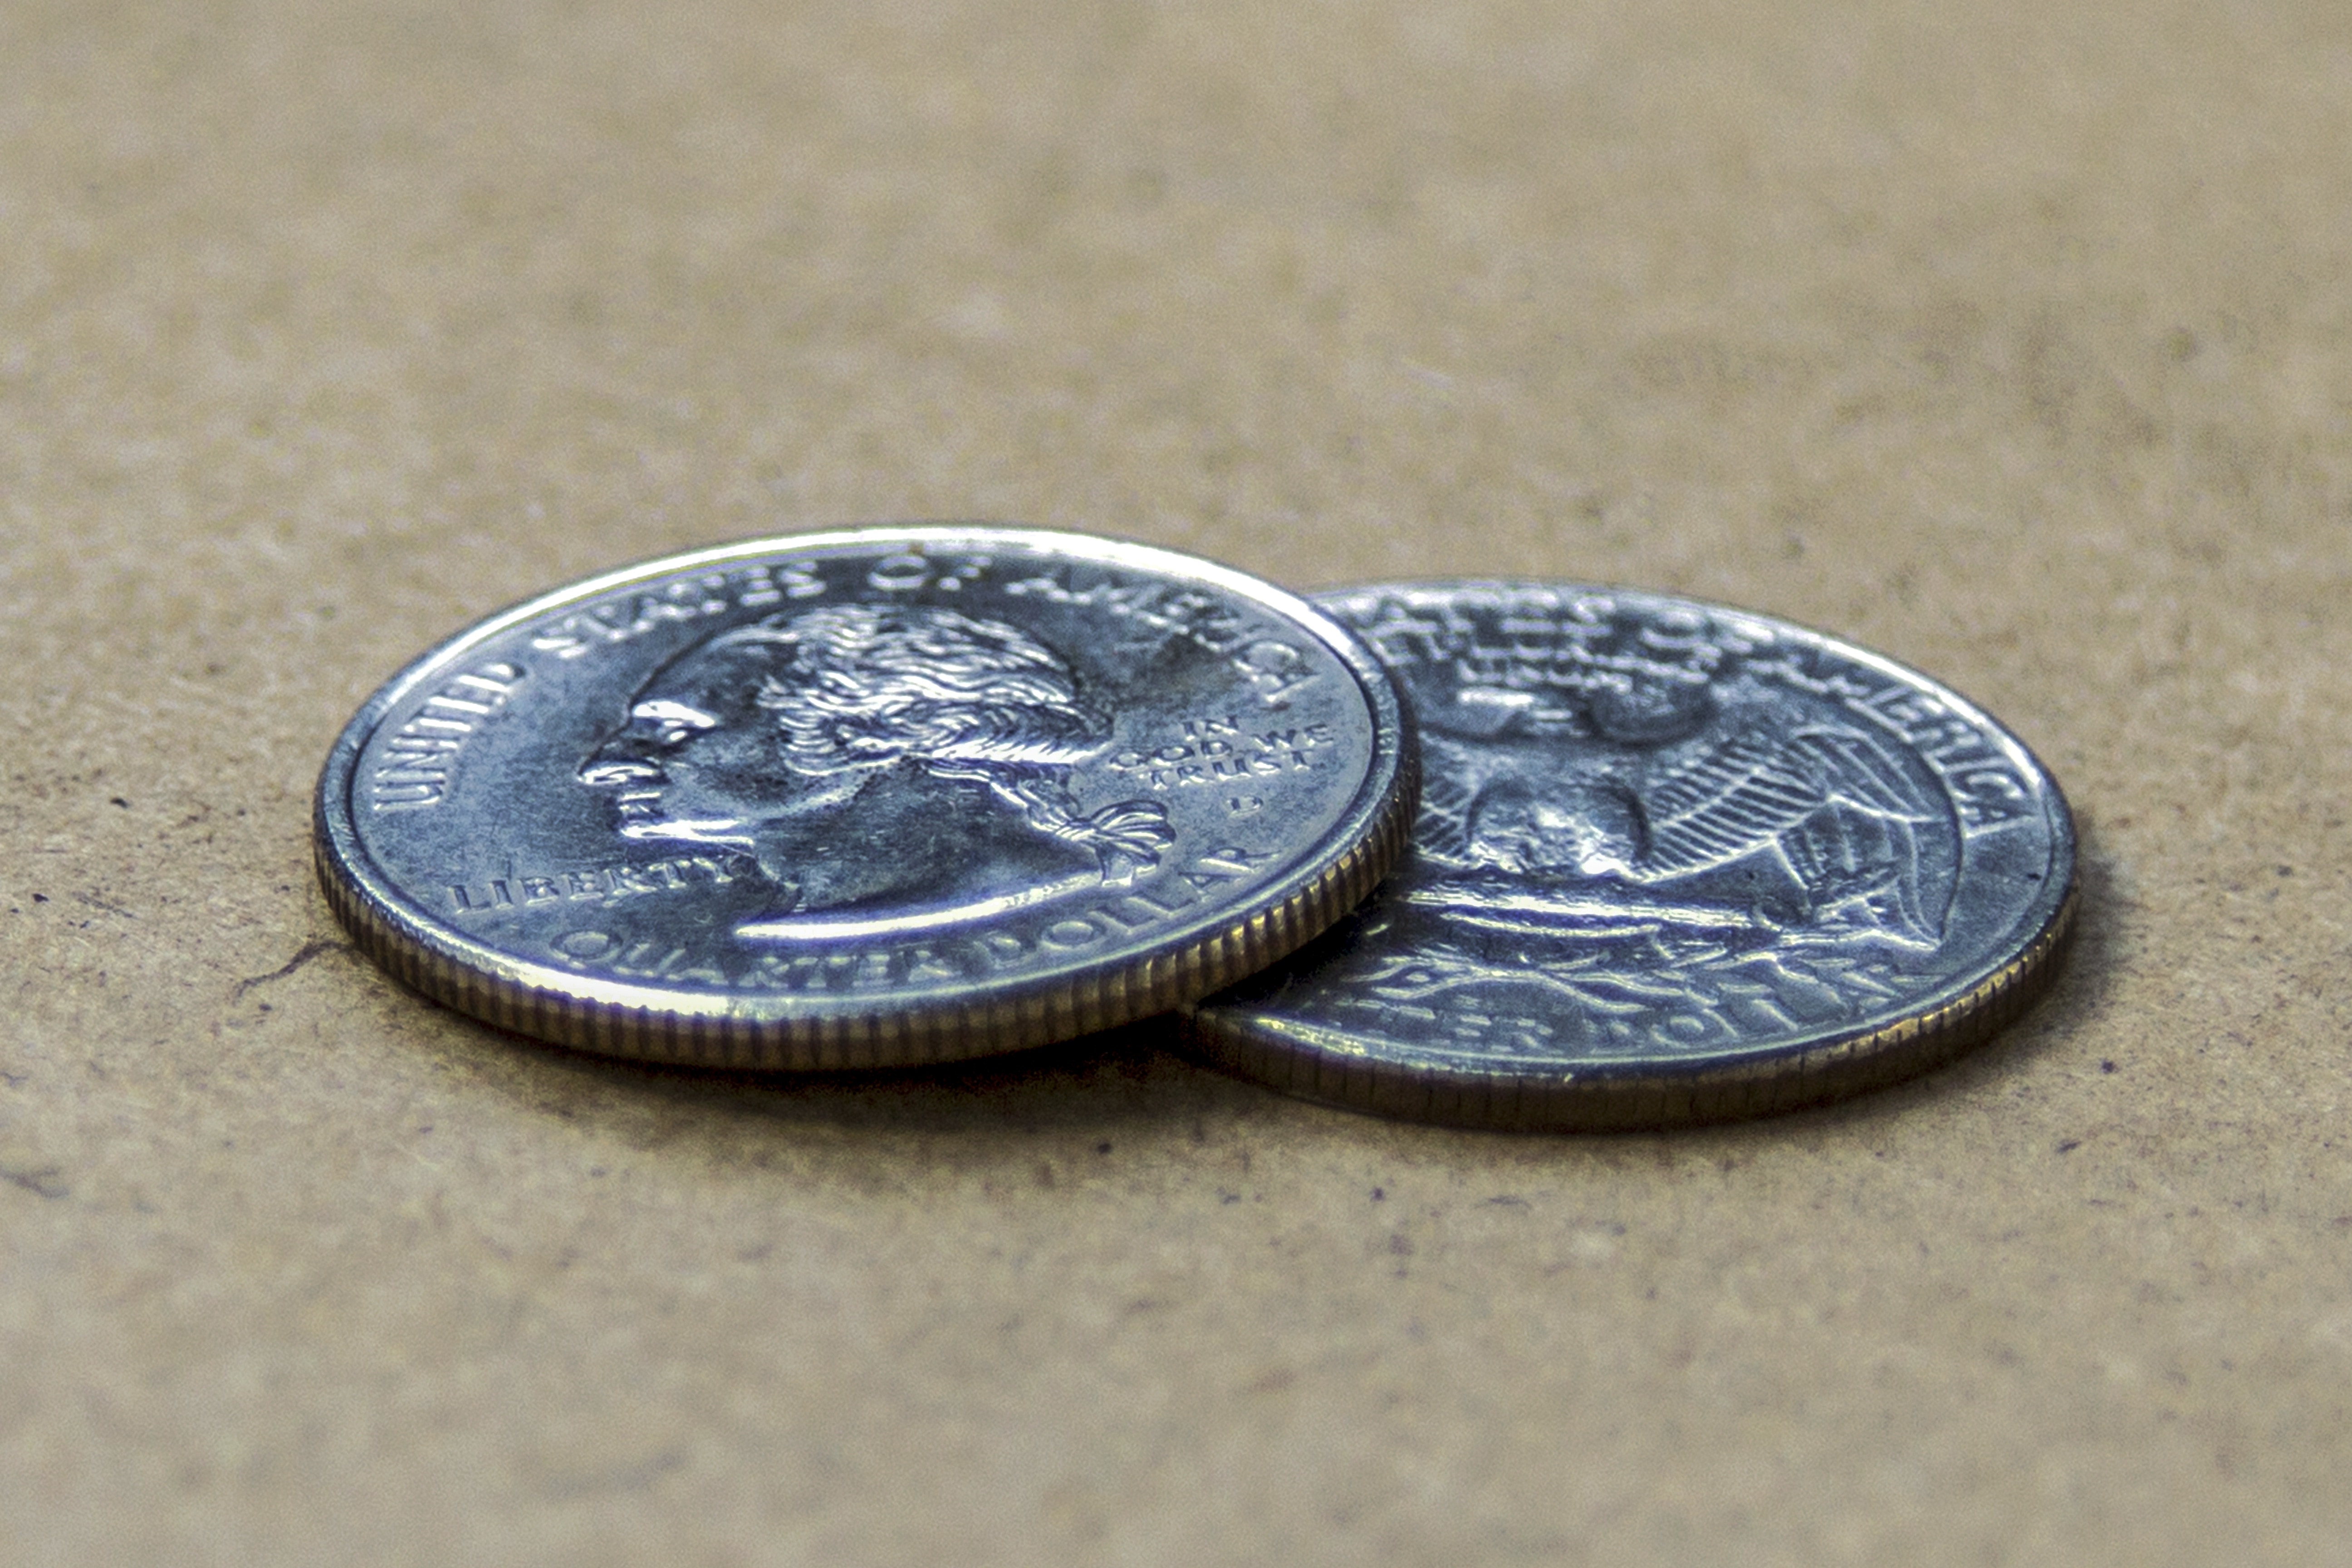 silver round coins